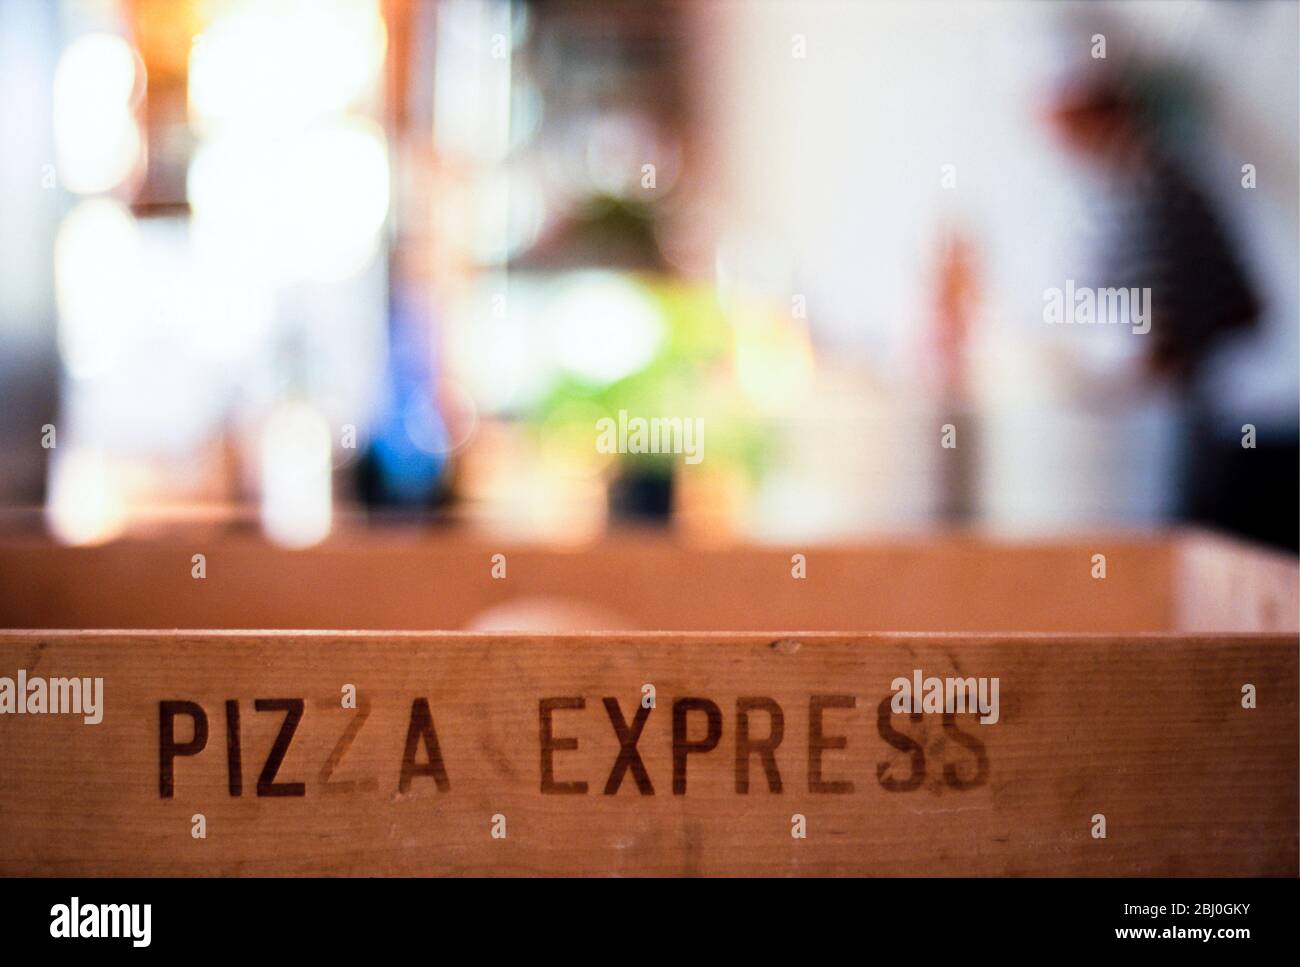 Das Innere des Pizza Express Restaurants zeigt beschriftete hölzerne Lieferbox und verschwommene Figuren und Details im Hintergrund - Stockfoto